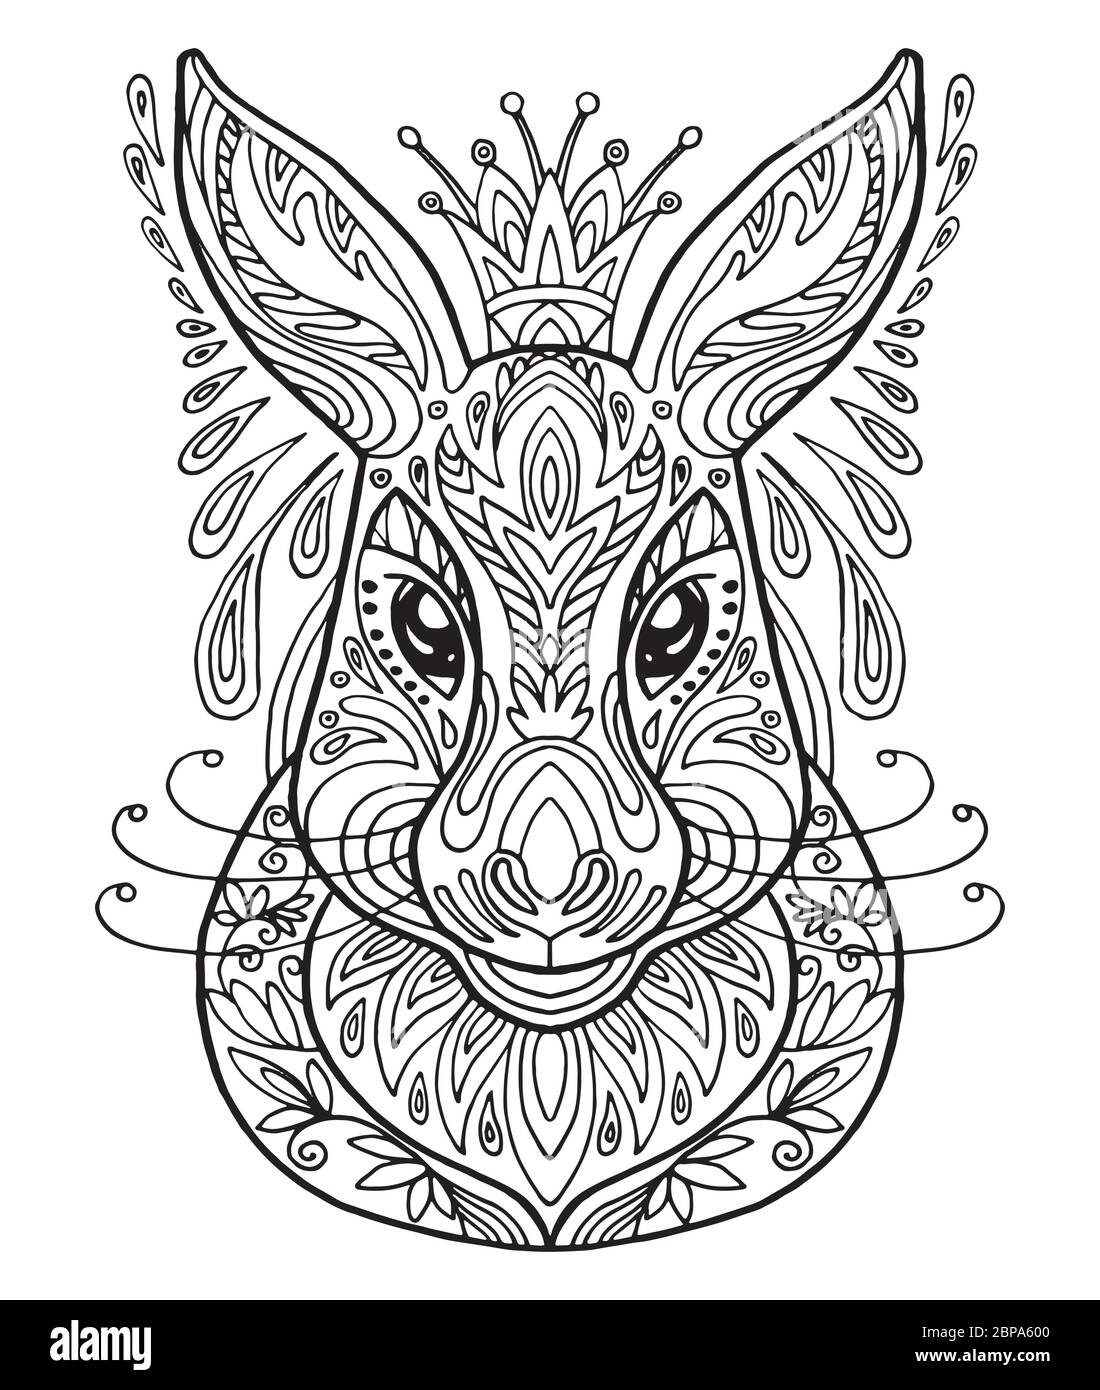 Vettore decorativo doodle testa ornamentale di lepre. Illustrazione vettoriale astratta del contorno nero lepre isolato su sfondo bianco. Illustrazione del magazzino Illustrazione Vettoriale